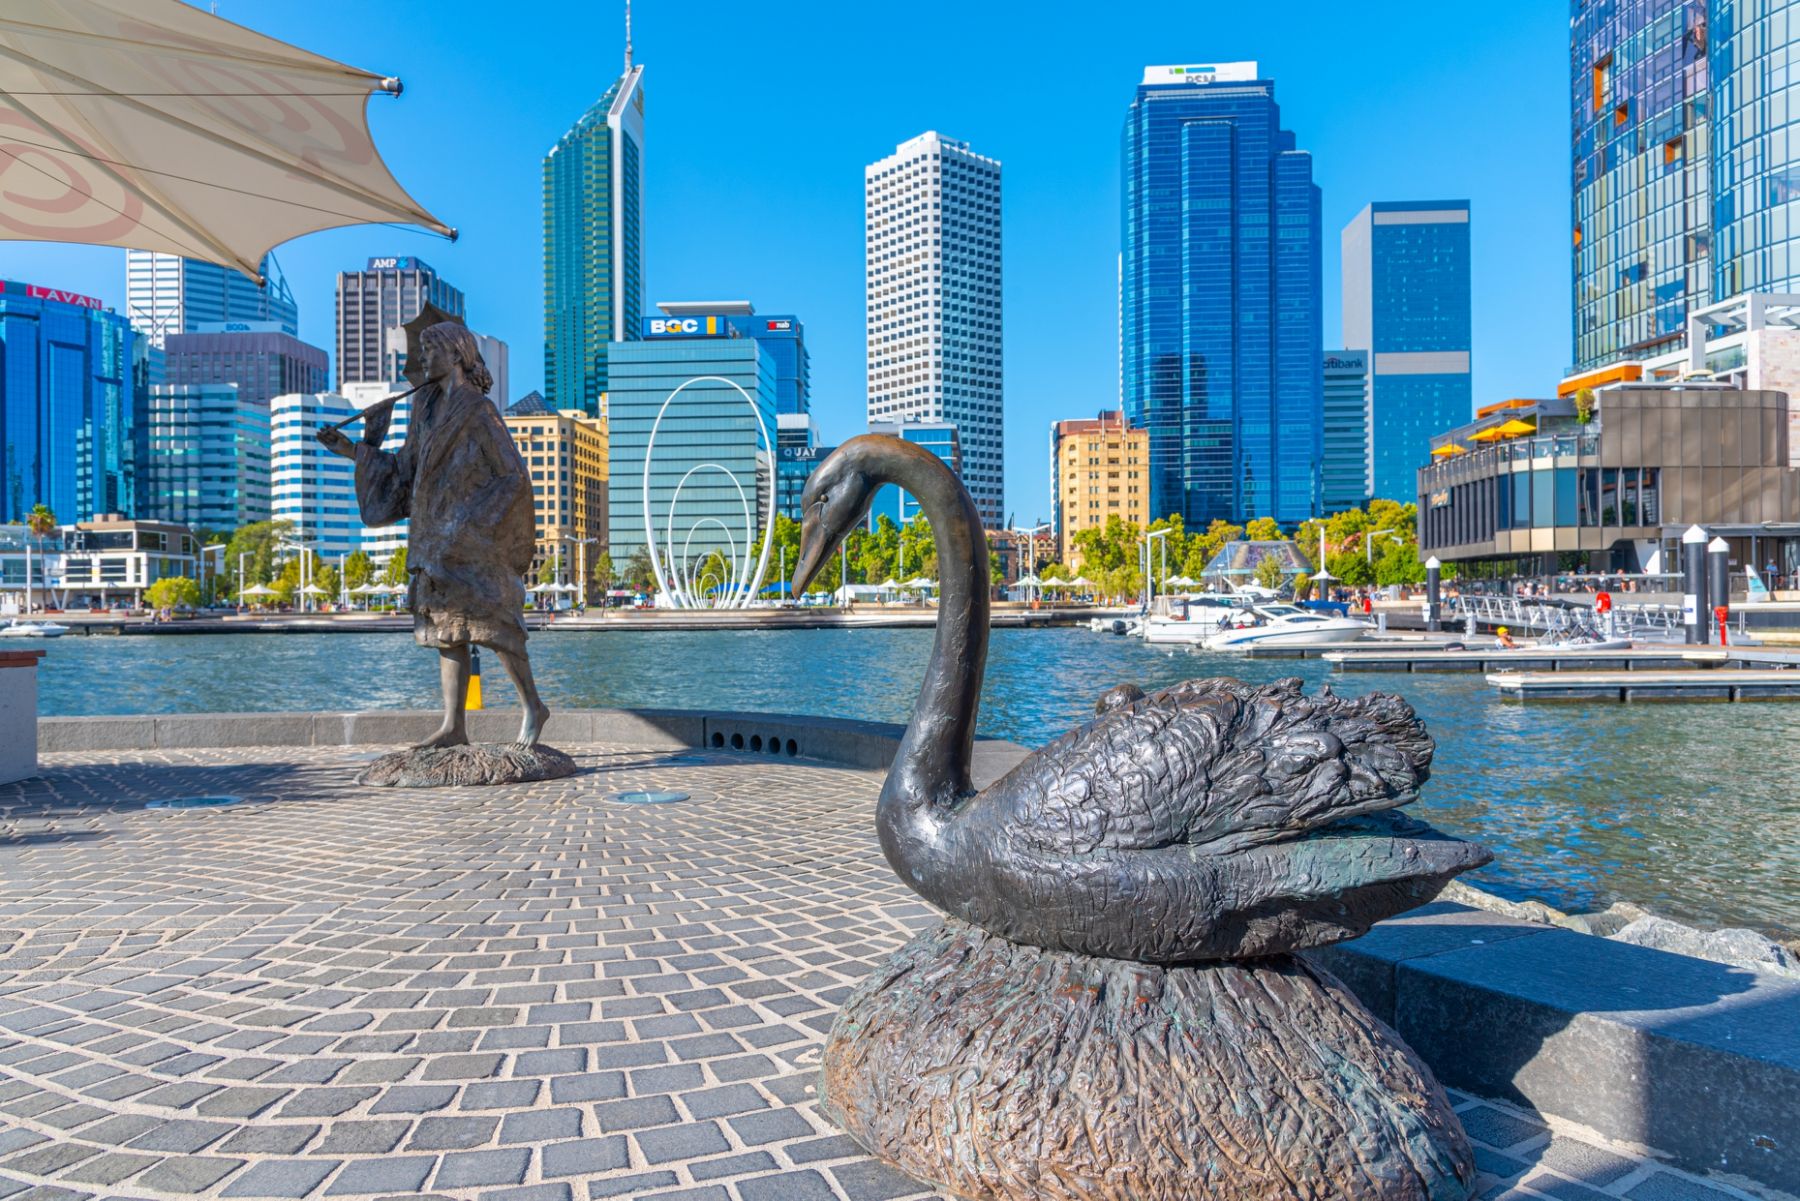 Perth là thành phố lớn thứ 4 tại “Xứ sở chuột túi”, thủ phủ của bang Tây Australia, với khí hậu tốt quanh năm, kinh tế phát triển với đa dạng văn hoá